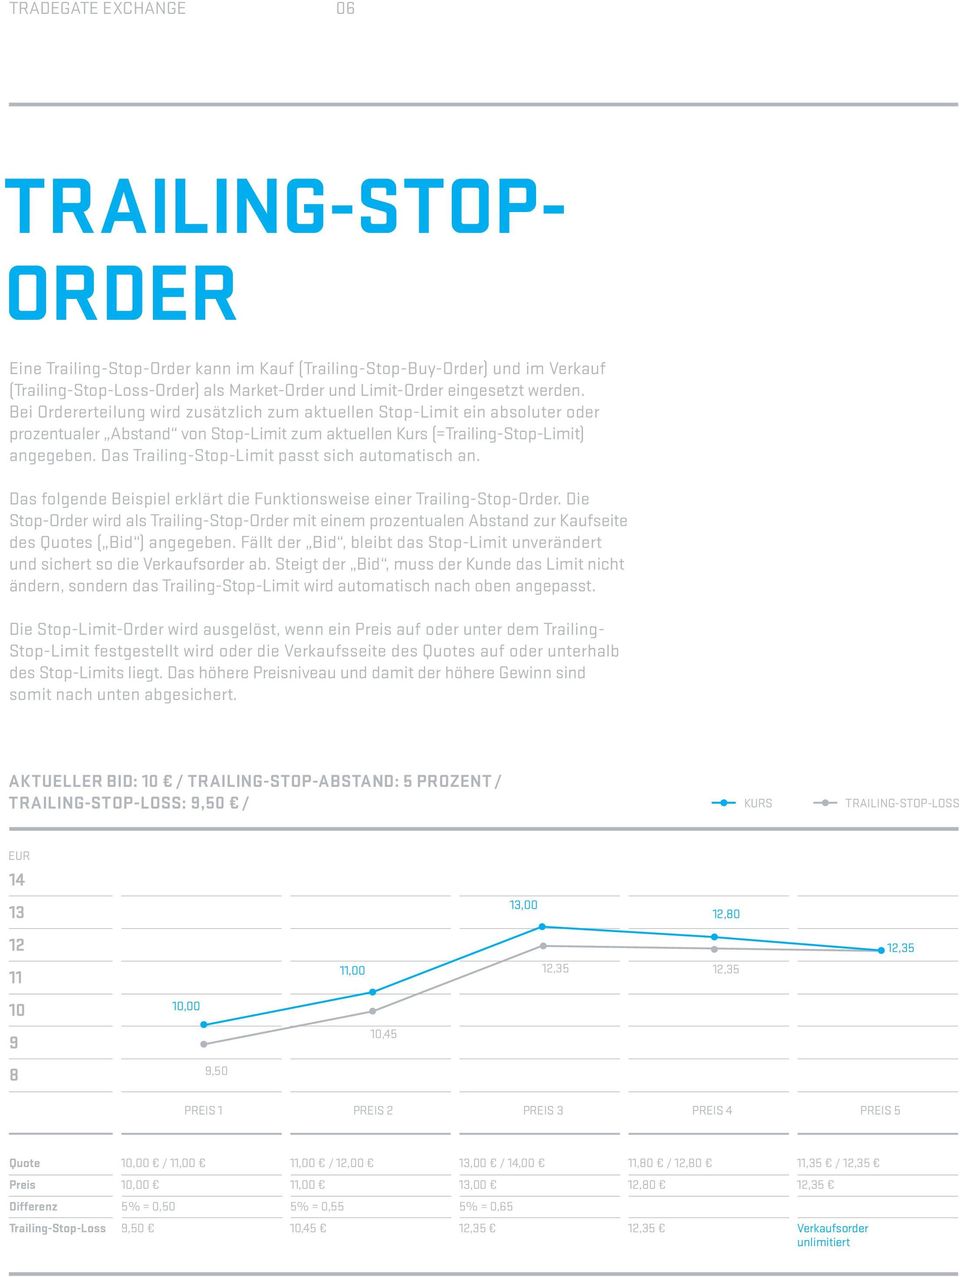 Das Trailing-Stop-Limit passt sich automatisch an. Das folgende Beispiel erklärt die Funktionsweise einer Trailing-Stop-Order.